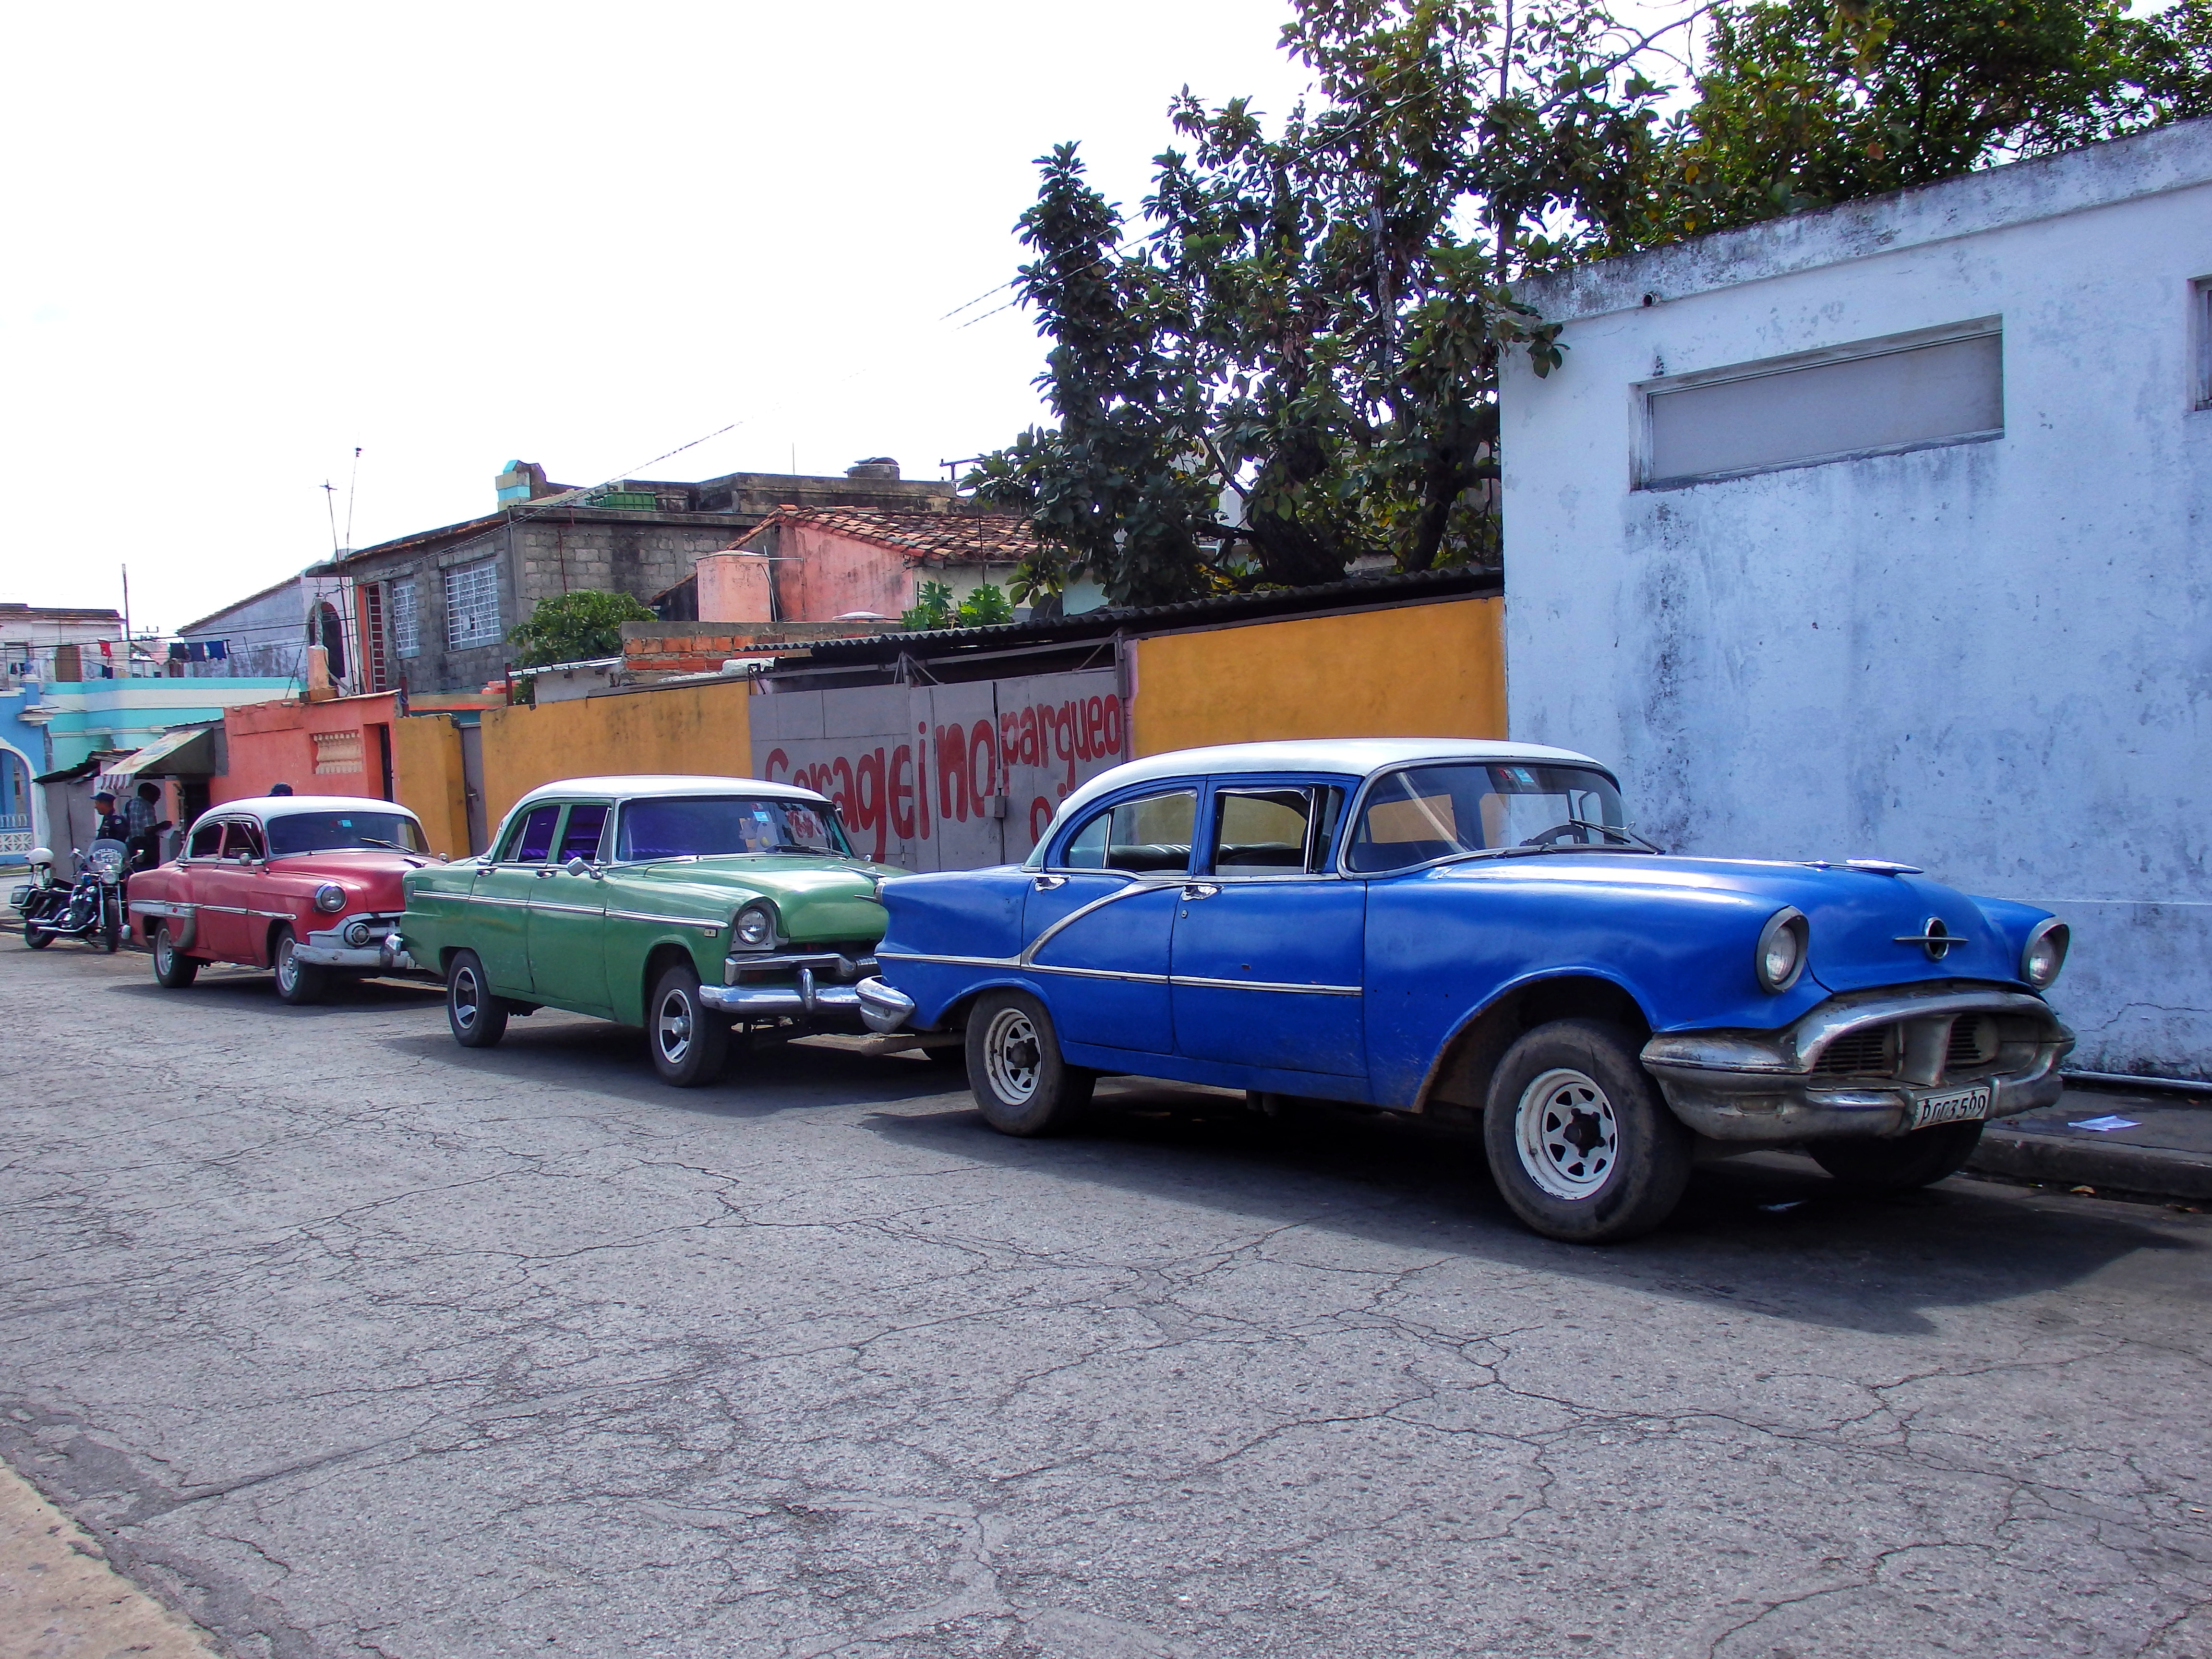 A kubai gépjárműpark a forradalom előtti amerikai gyártmányú autói mellett a hidegháború szocialista blokkjának járműveivel – így némileg átalakított Ikarusokkal – is bővült, napjainkban pedig egyre több a kínai gyártmány az utakon.